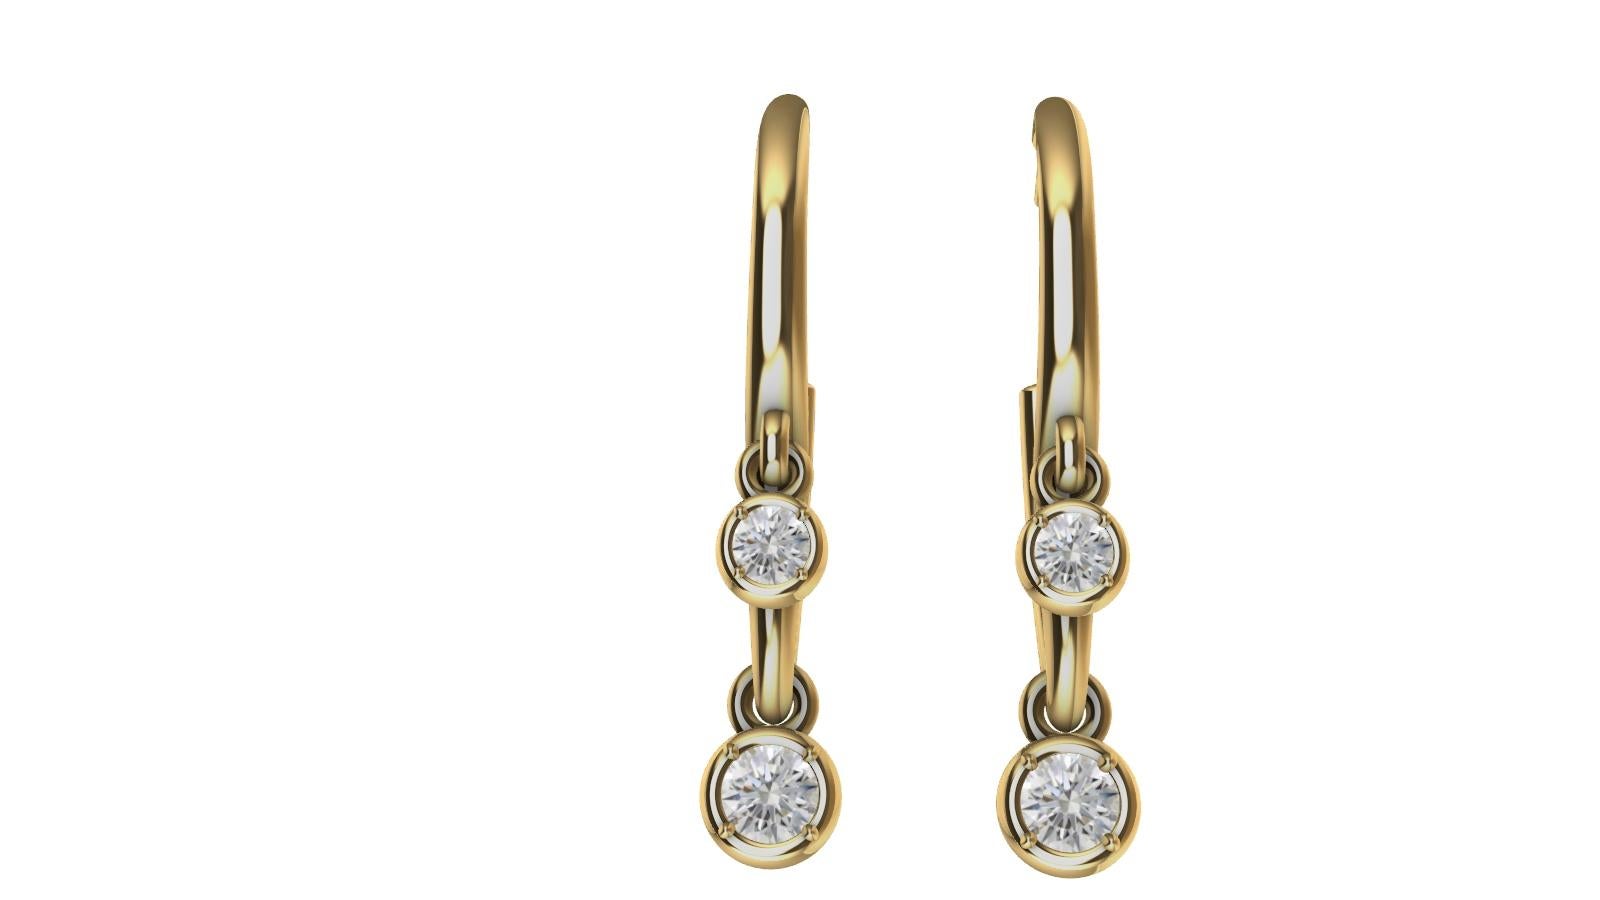 Anneaux à diamants en or jaune 18 carats, le designer de Tiffany, Thomas Kurilla, a créé ces 